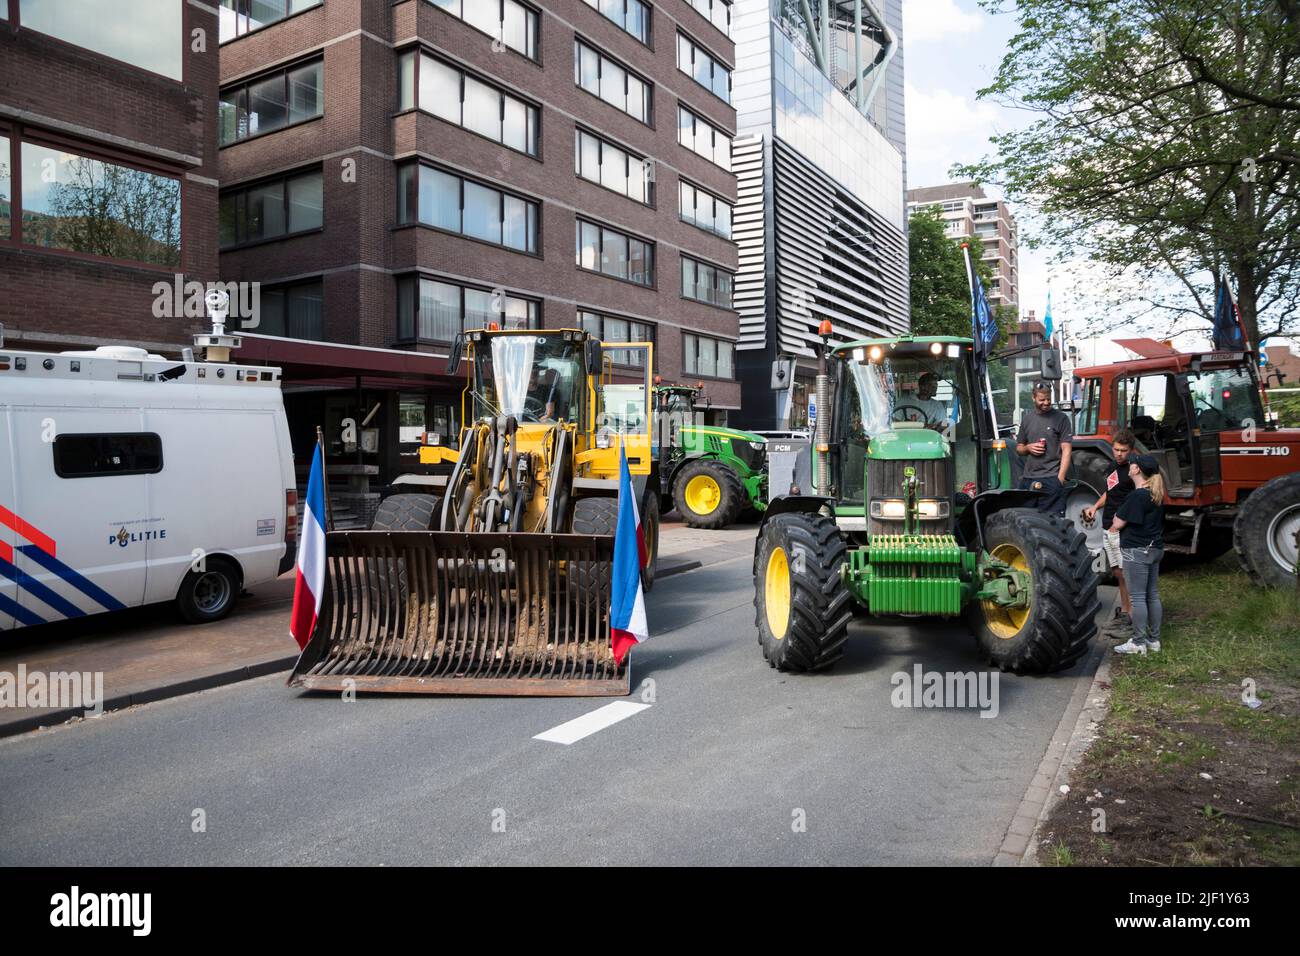 28-06-2022 Den Haag, Niederlande.Landwirte protestieren gegen Maßnahmen zur Senkung der Stickstoffemissionen. Aufgrund dieser Maßnahmen werden viele Bauern aus dem Geschäft genommen.Nachdem die Bauern gegangen waren, marschierten andere Demonstranten in die Stadt, wurden aber von der Polizei eingekistelt und einige Festnahmen wurden vorgenommen. Stockfoto